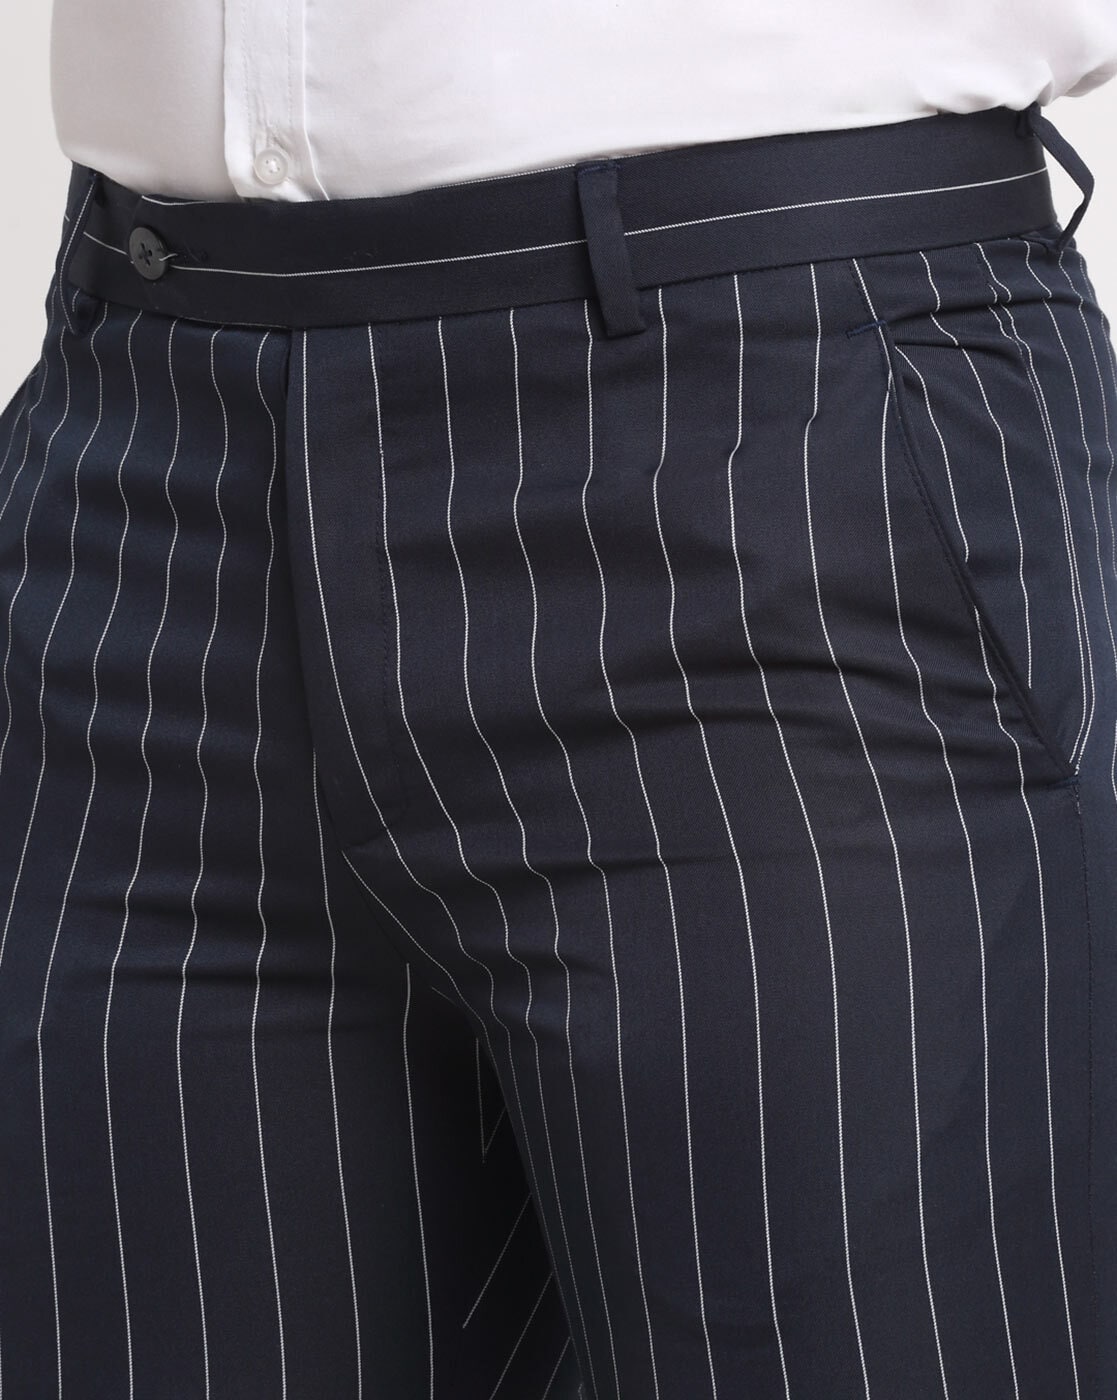 Zara Men's Striped Pants Trousers Cuffed Blue White Tie Waist Size Large |  eBay